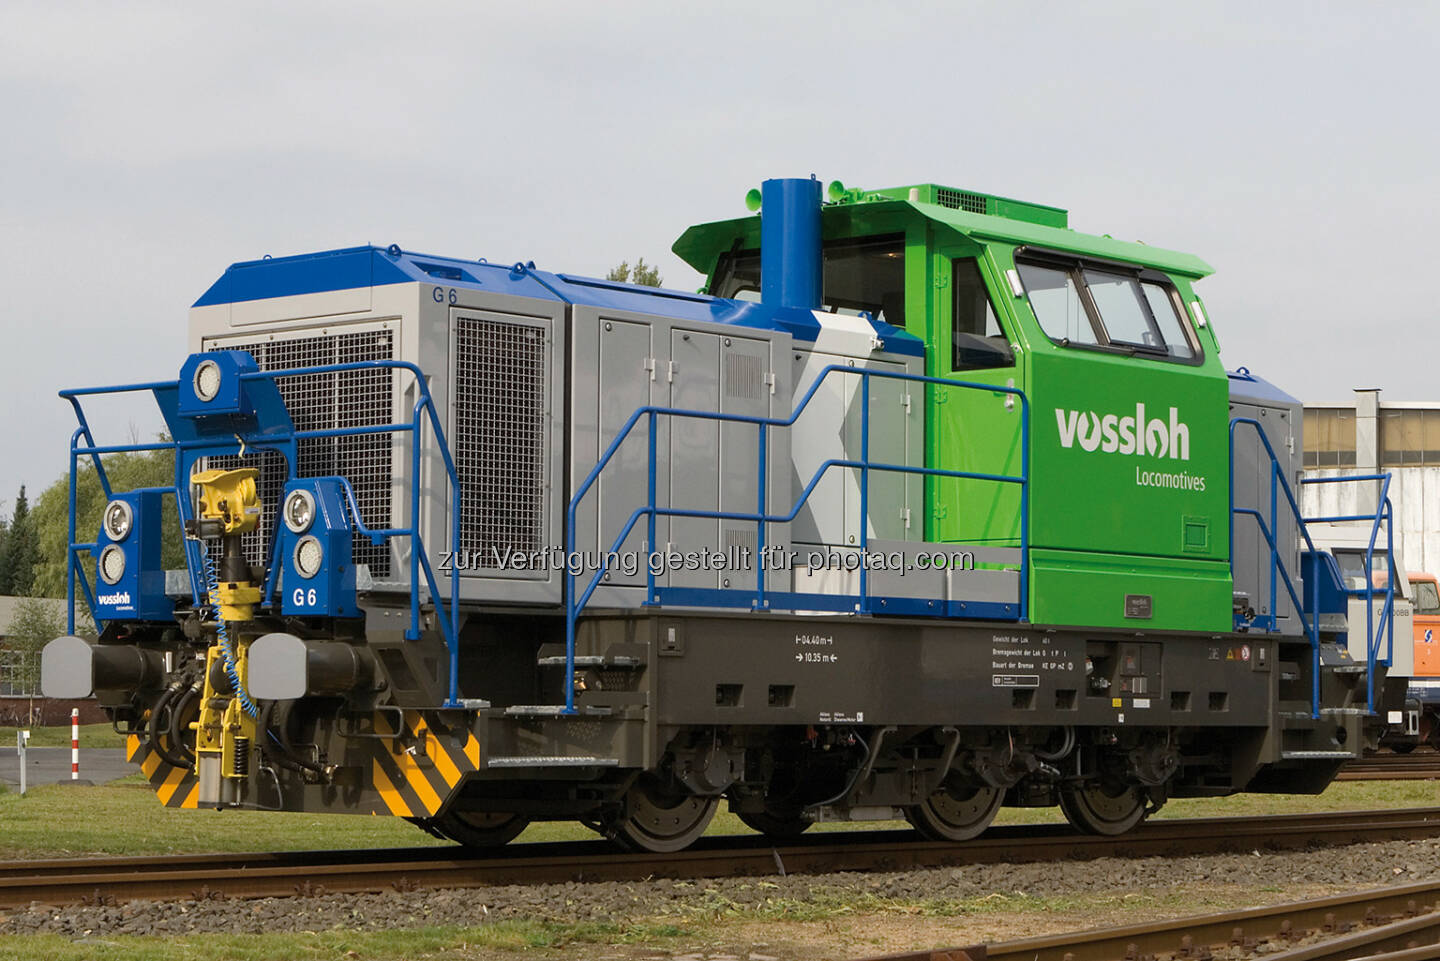 Vossloh Diesellokomotive der Baureihe G 6 - Diese Rangierlokomotive ist eine einfache und robuste Konstruktion, optimiert für den Rangiereinsatz in lokalen Netzen. Sie erfüllt die neuen gesetzlichen Normen und die EBO-Zulassungsanforderungen. (Bild: Vossloh, http://www.vossloh.com/de/press/press_photos/press_photos.html )